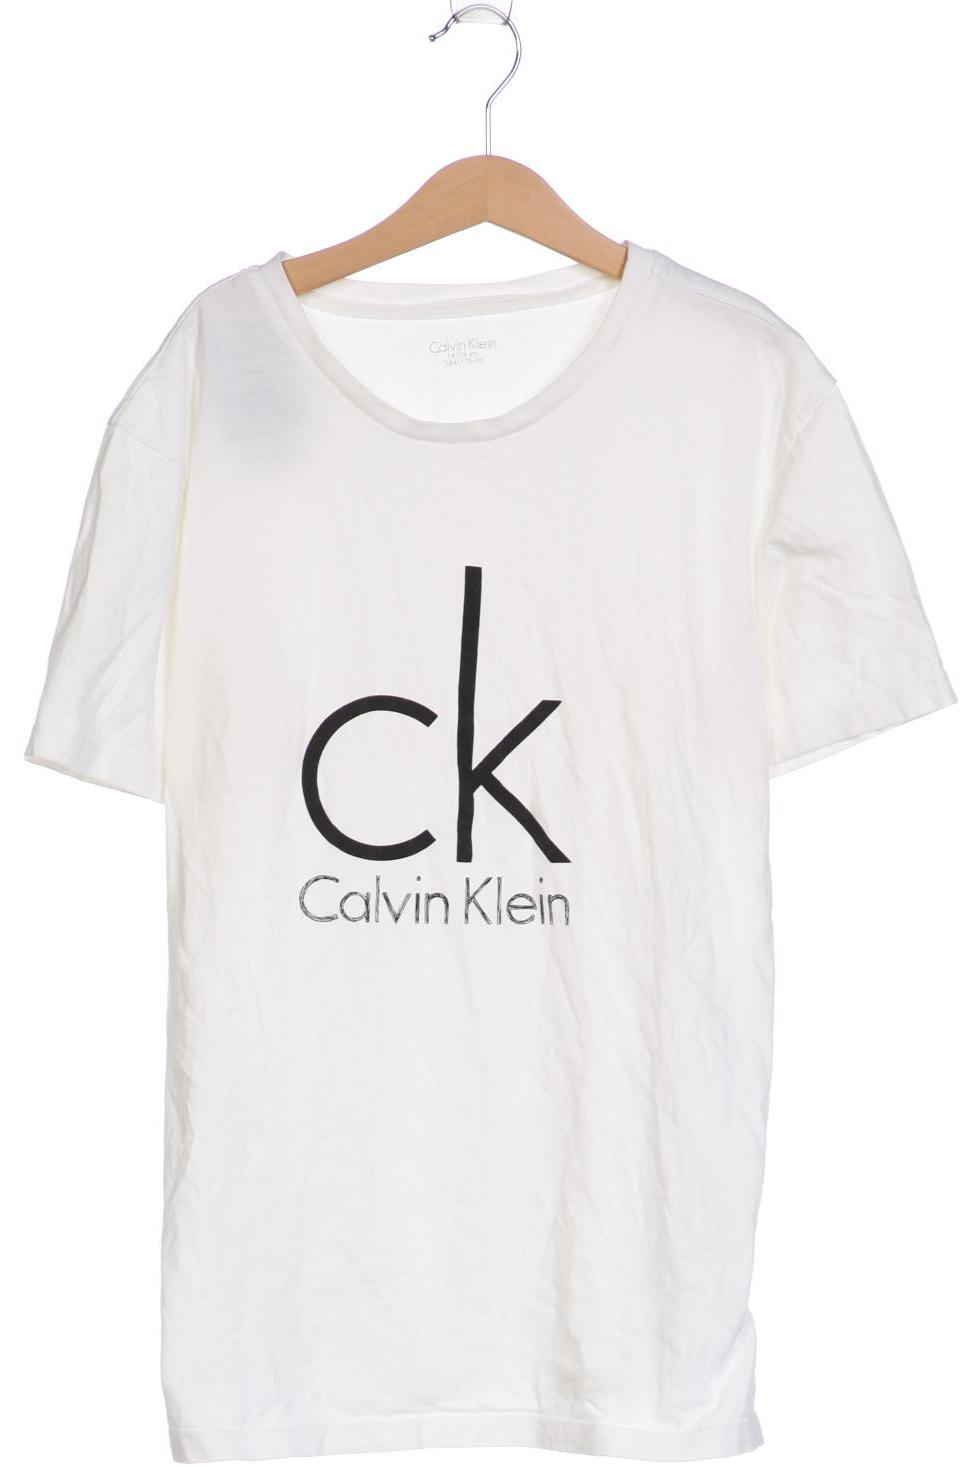 Calvin Klein Mädchen T-Shirt, weiß von Calvin Klein